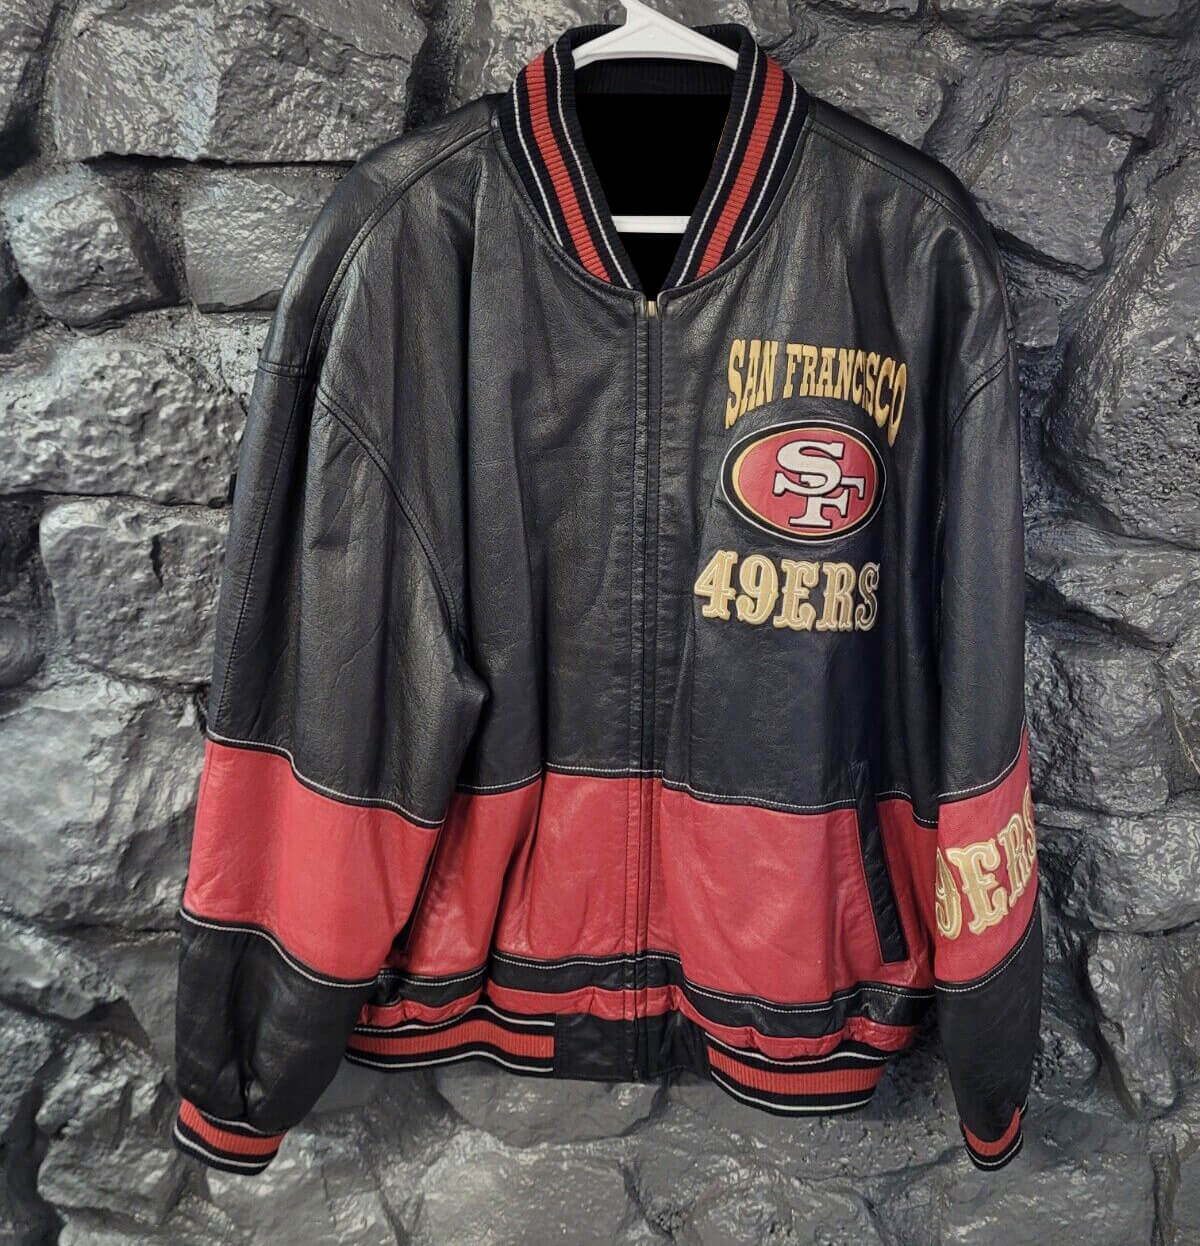 Maker of Jacket Fashion Jackets Vintage San Francisco 49ers NFL Leather